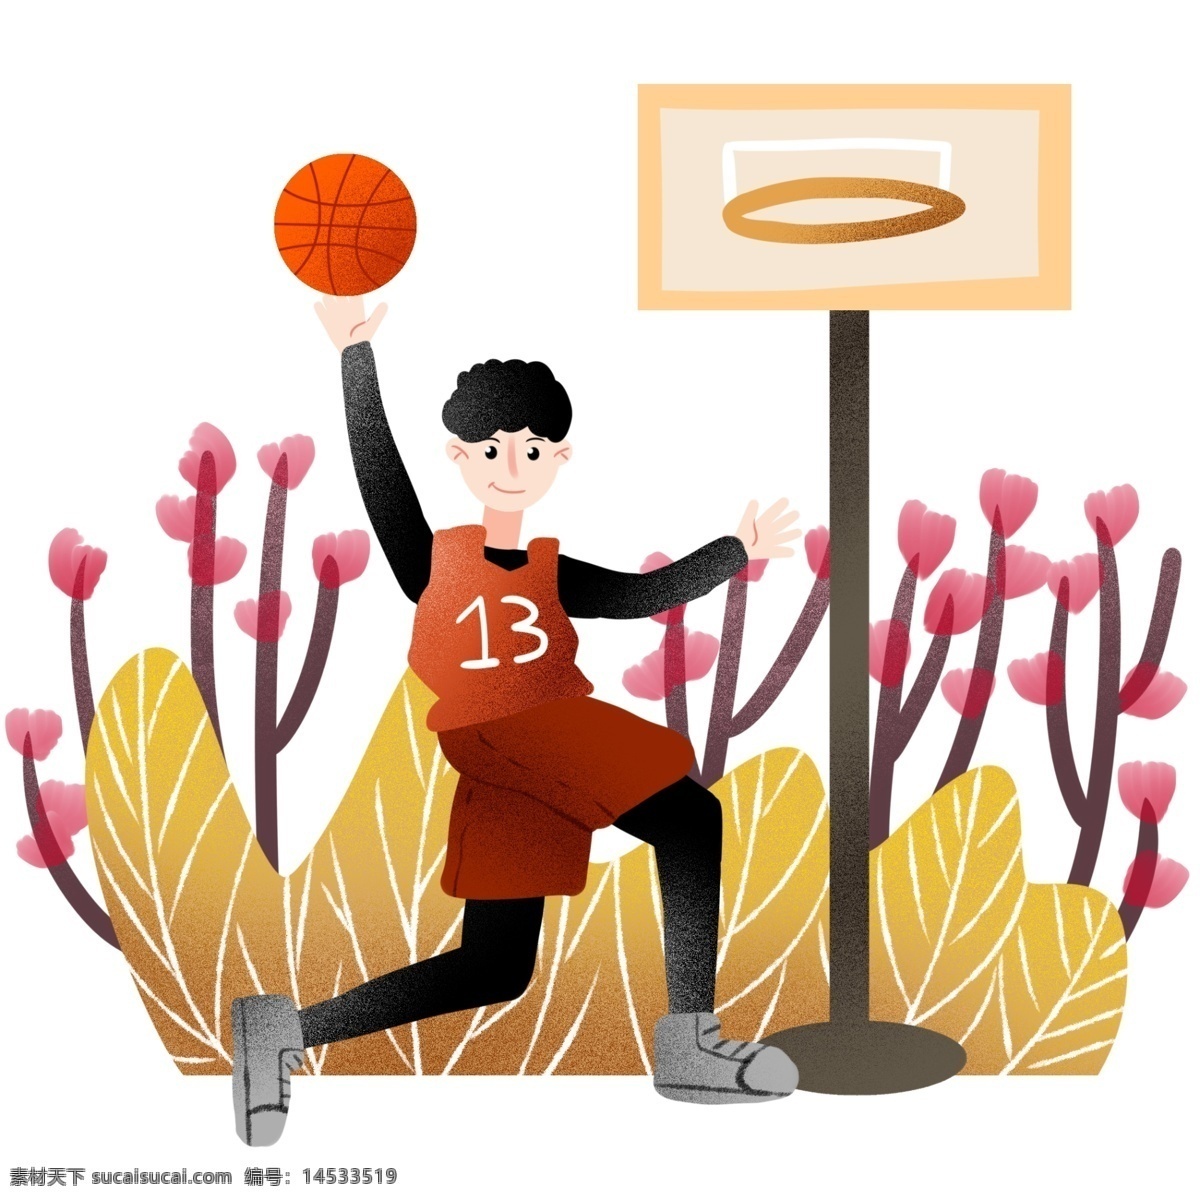 篮球 框子 健身 运动 打篮球男孩 健身运动 卡通插画 体育运动 活动筋骨 加强锻炼 篮球框子插画